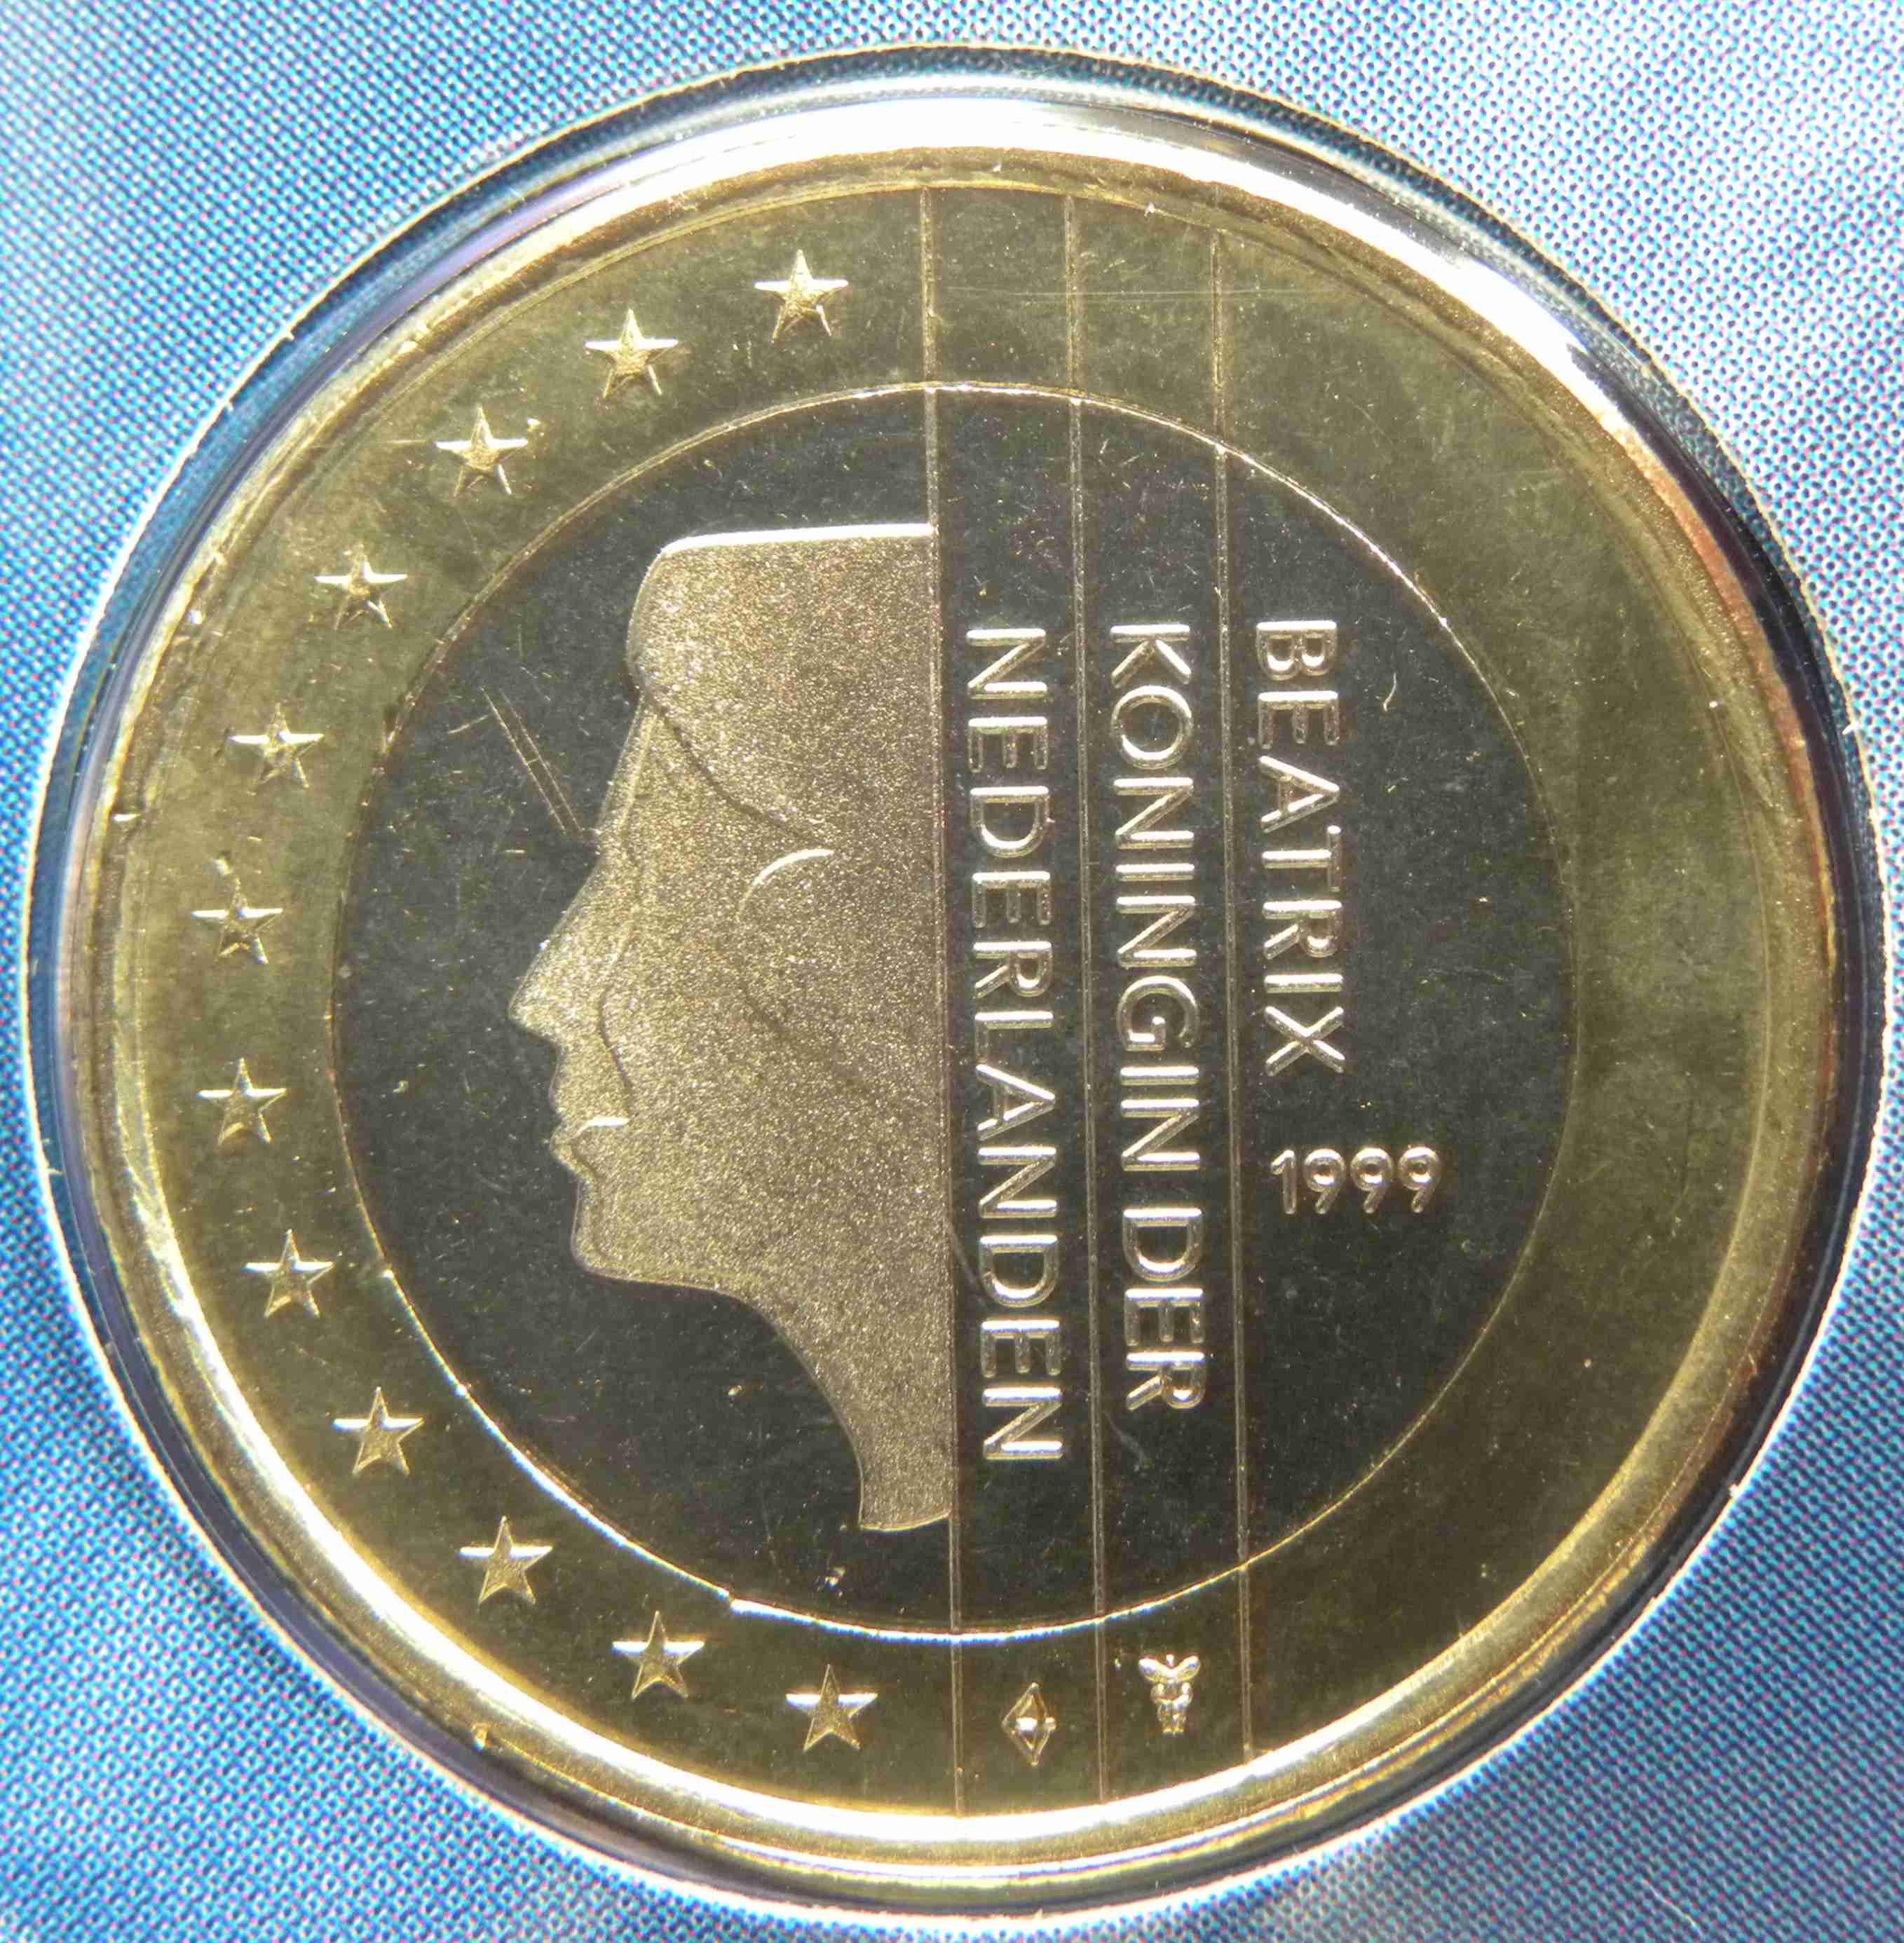 Niederlande 1 Euro Münze 1999 - euro-muenzen.tv - Der Online Euromünzen